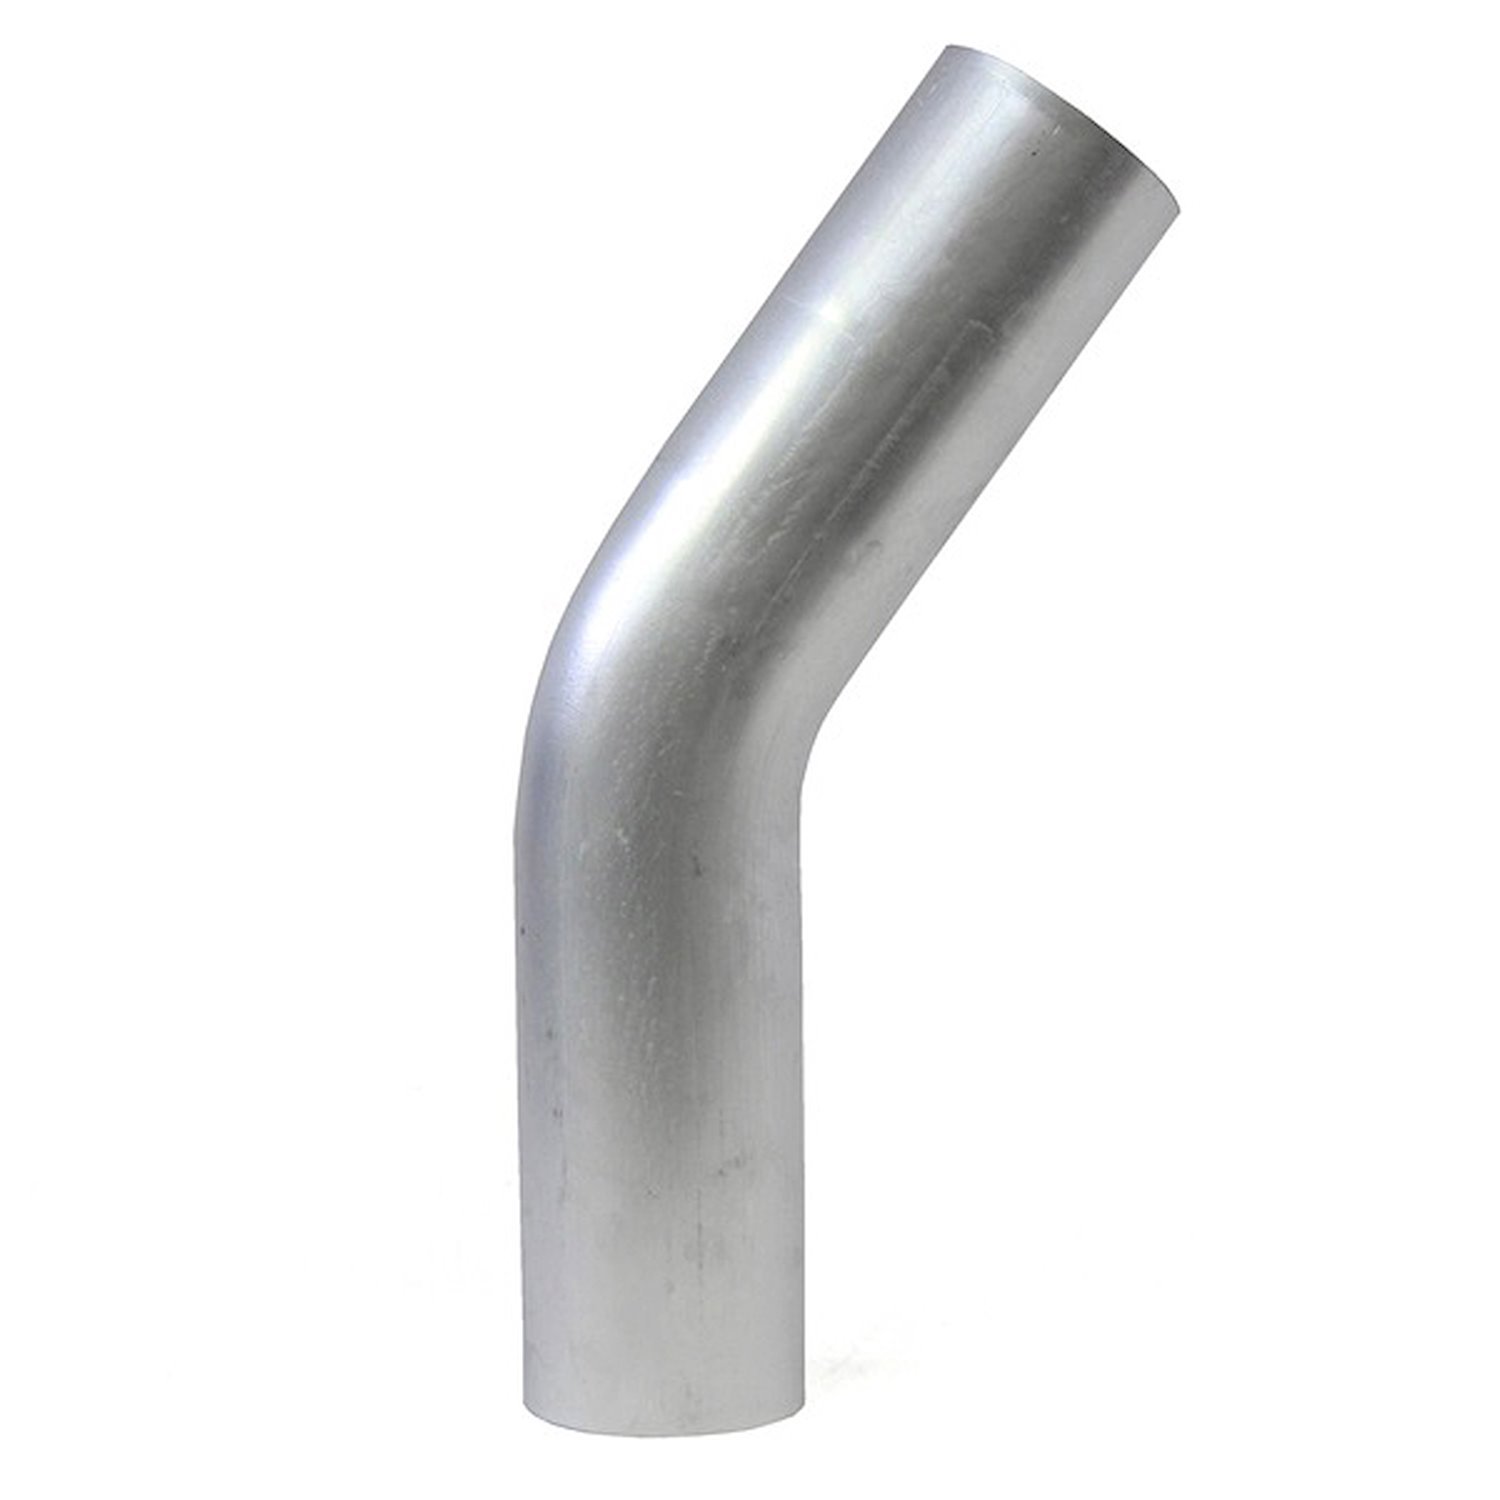 AT35-350-CLR-56 Aluminum Elbow Tube, 6061 Aluminum, 35-Degree Bend Elbow Tubing, 3-1/2 in. OD, Large Radius, 5-5/8 in. CLR